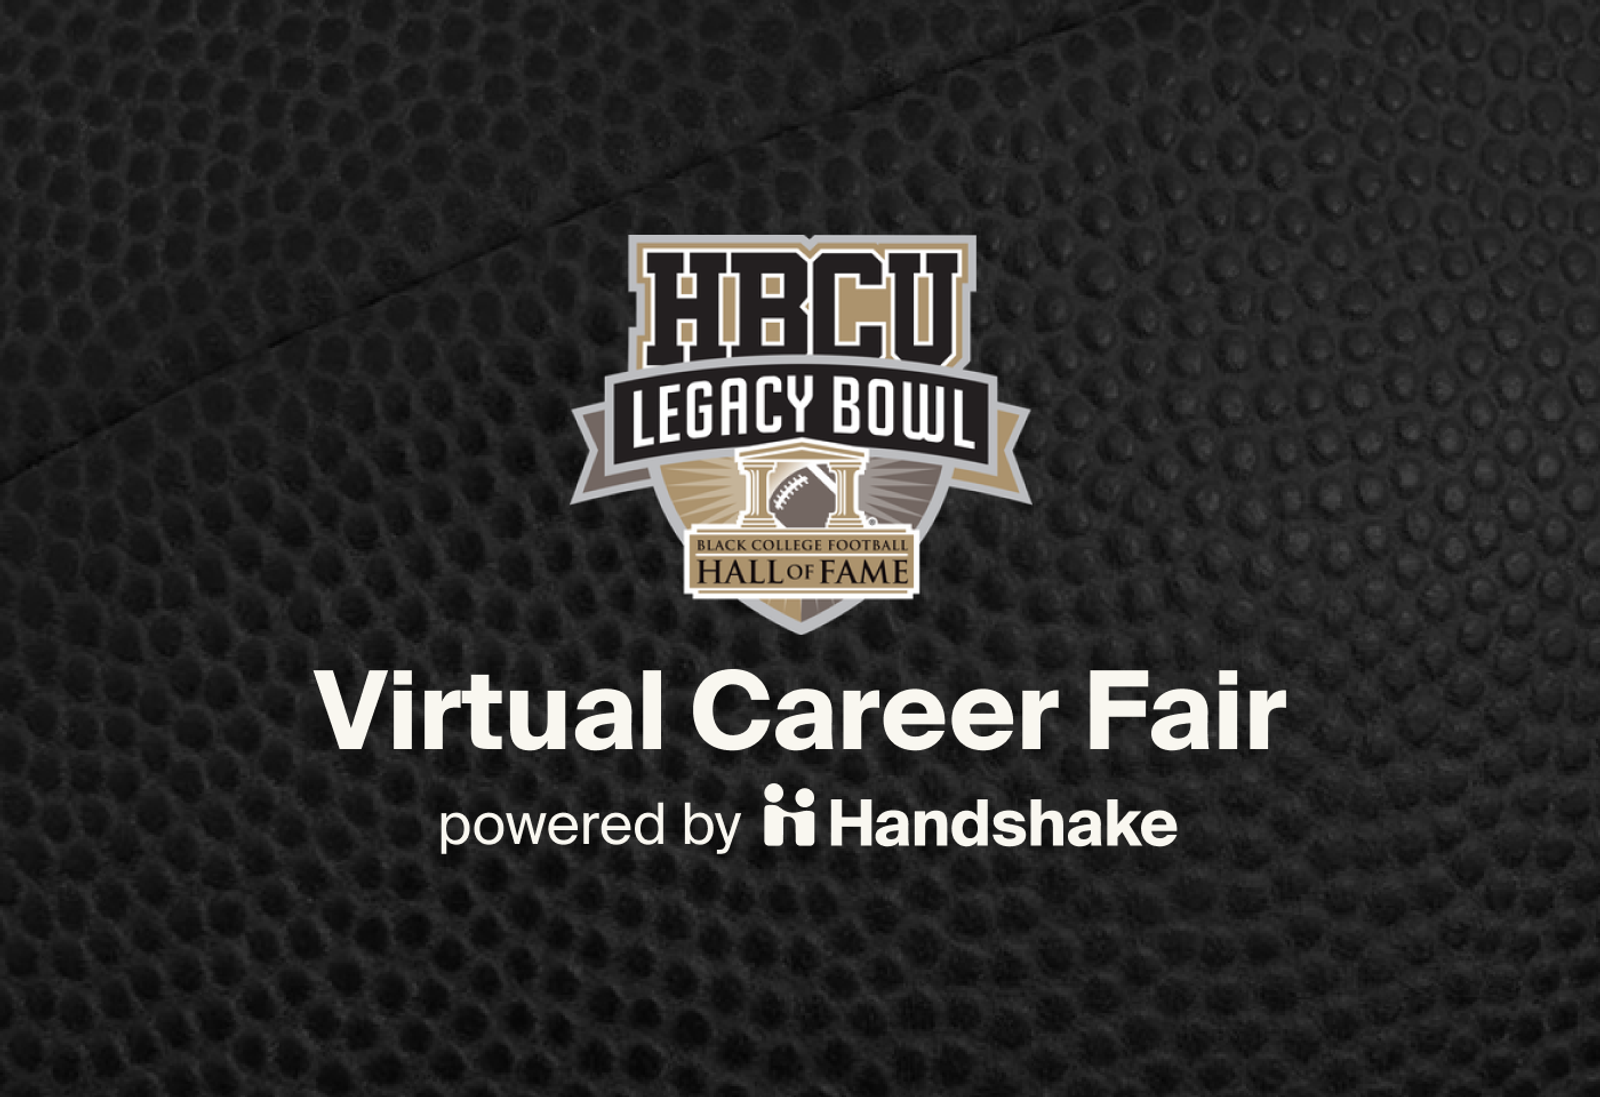 HBCU Legacy Bowl Virtual Career Fair Handshake